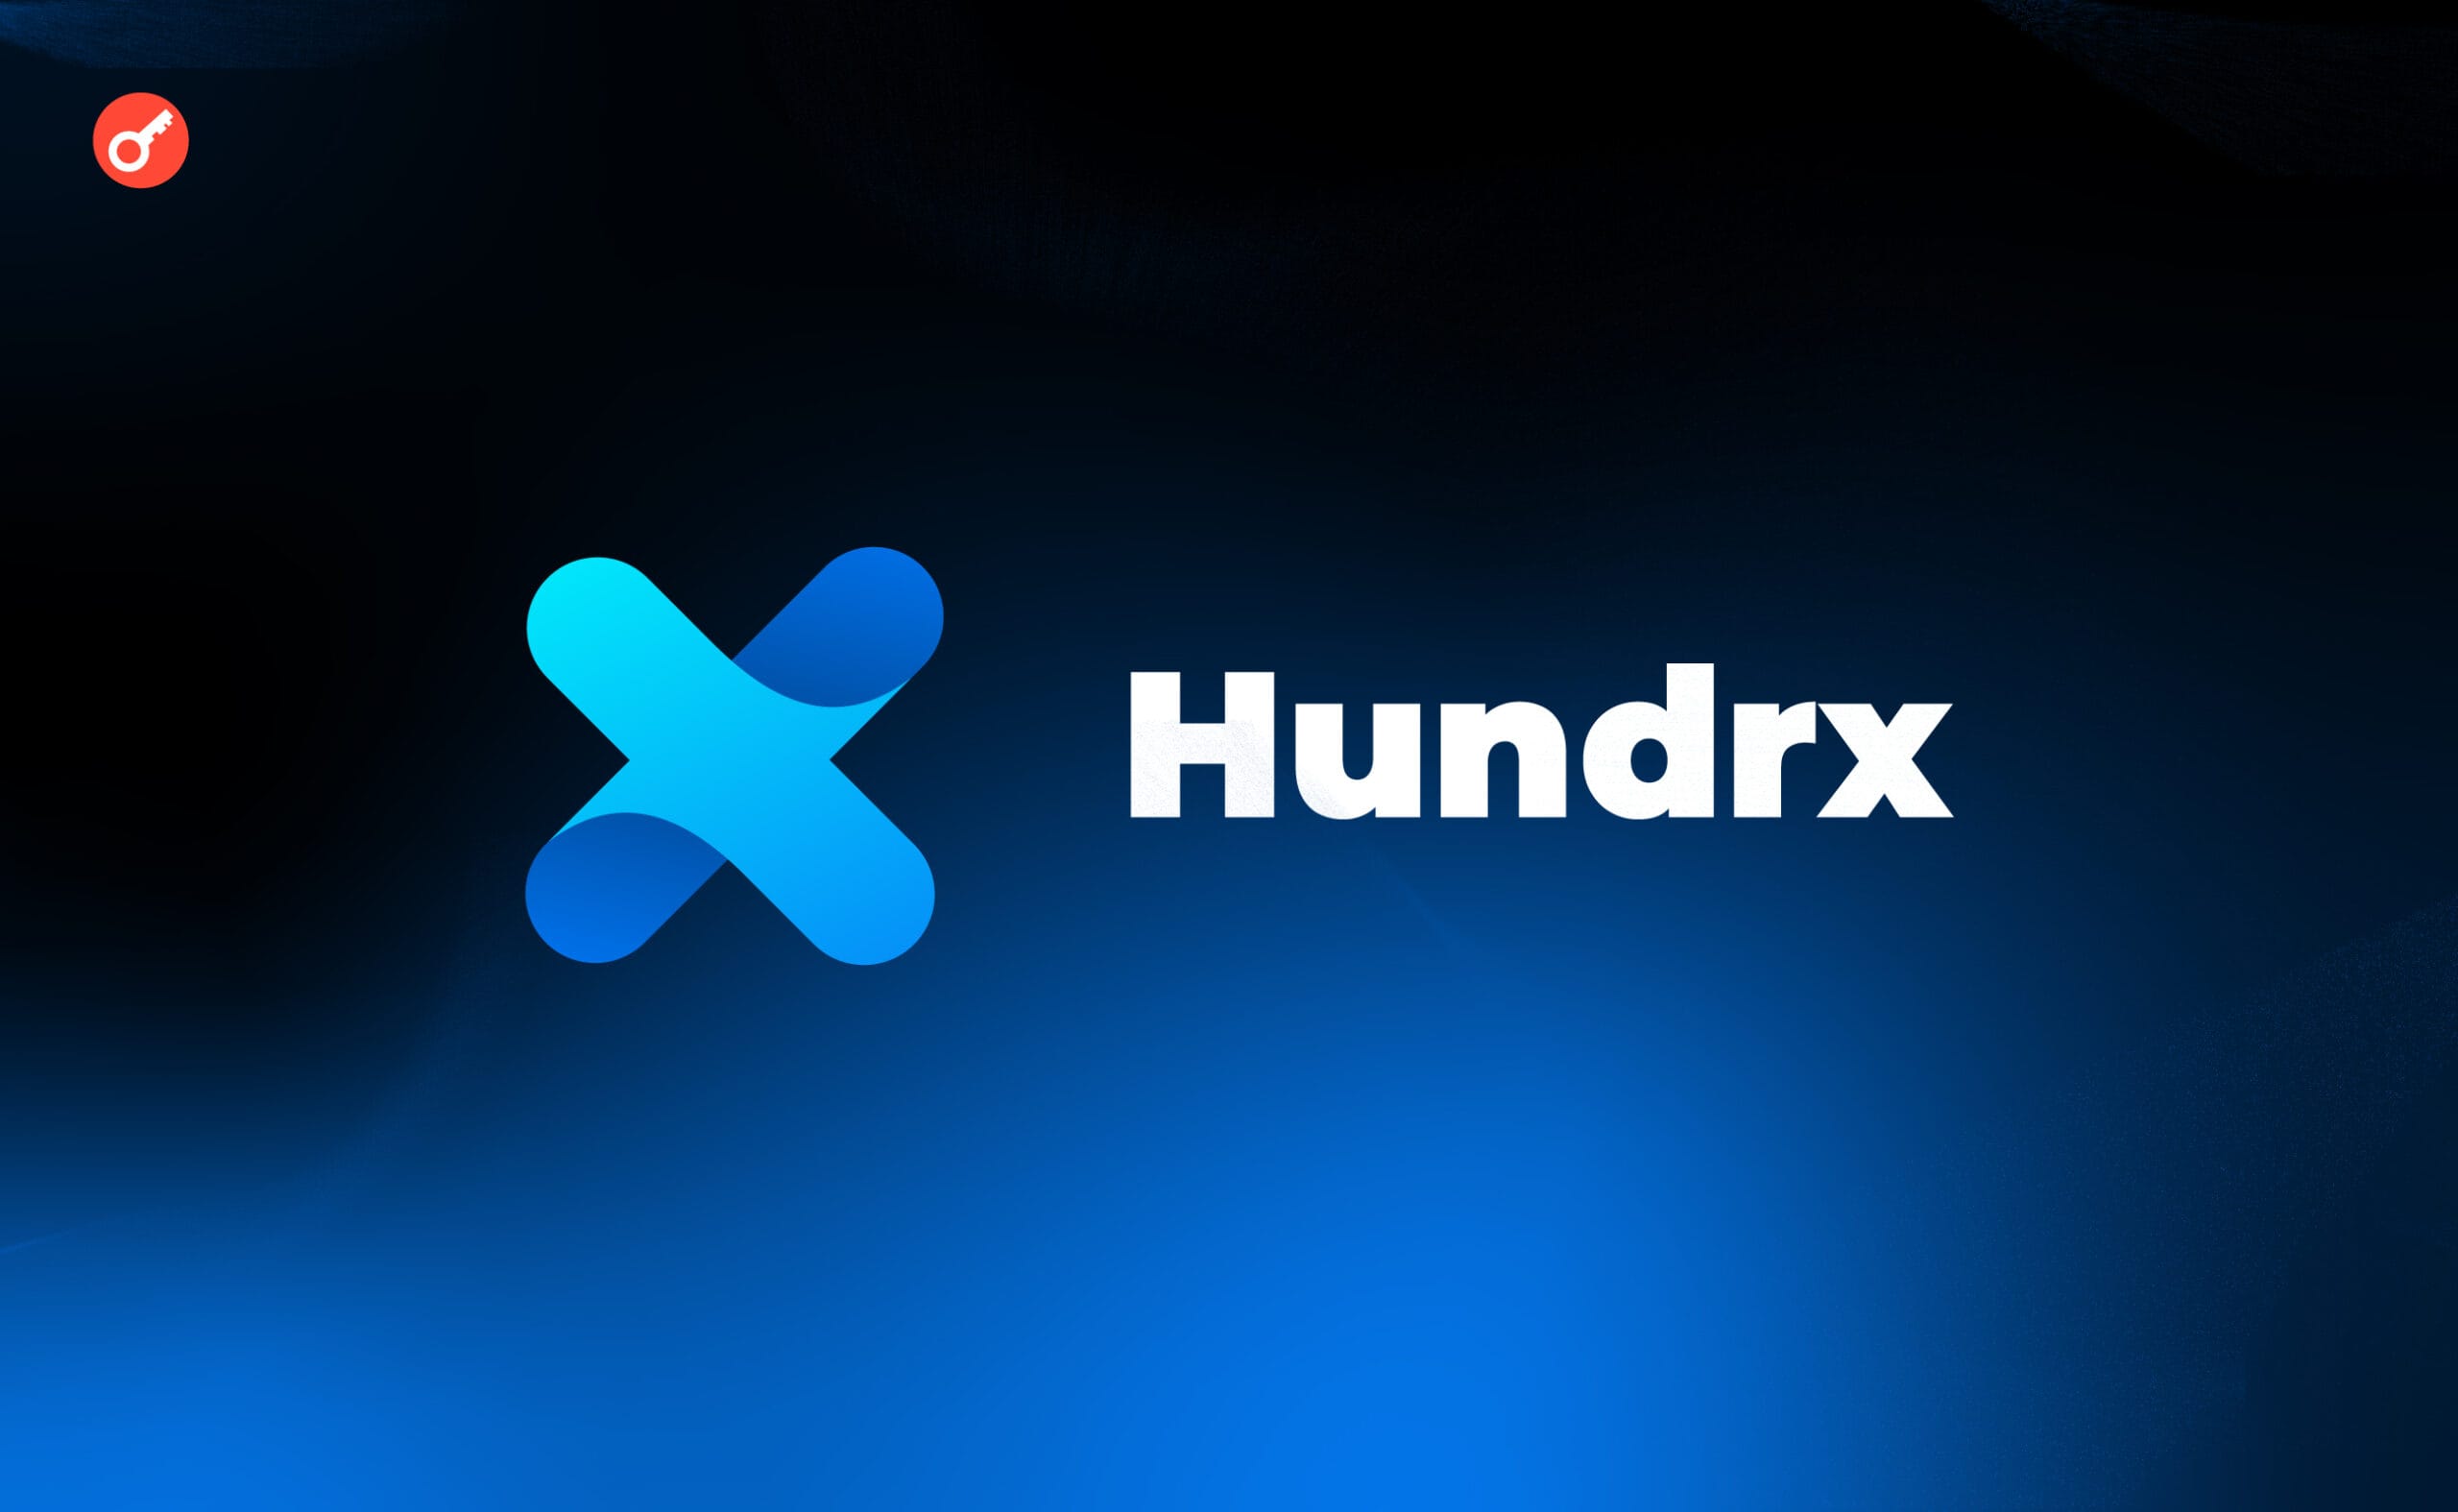 Hundrx тестнет: инструкция по прохождению активностей. Заглавный коллаж статьи.